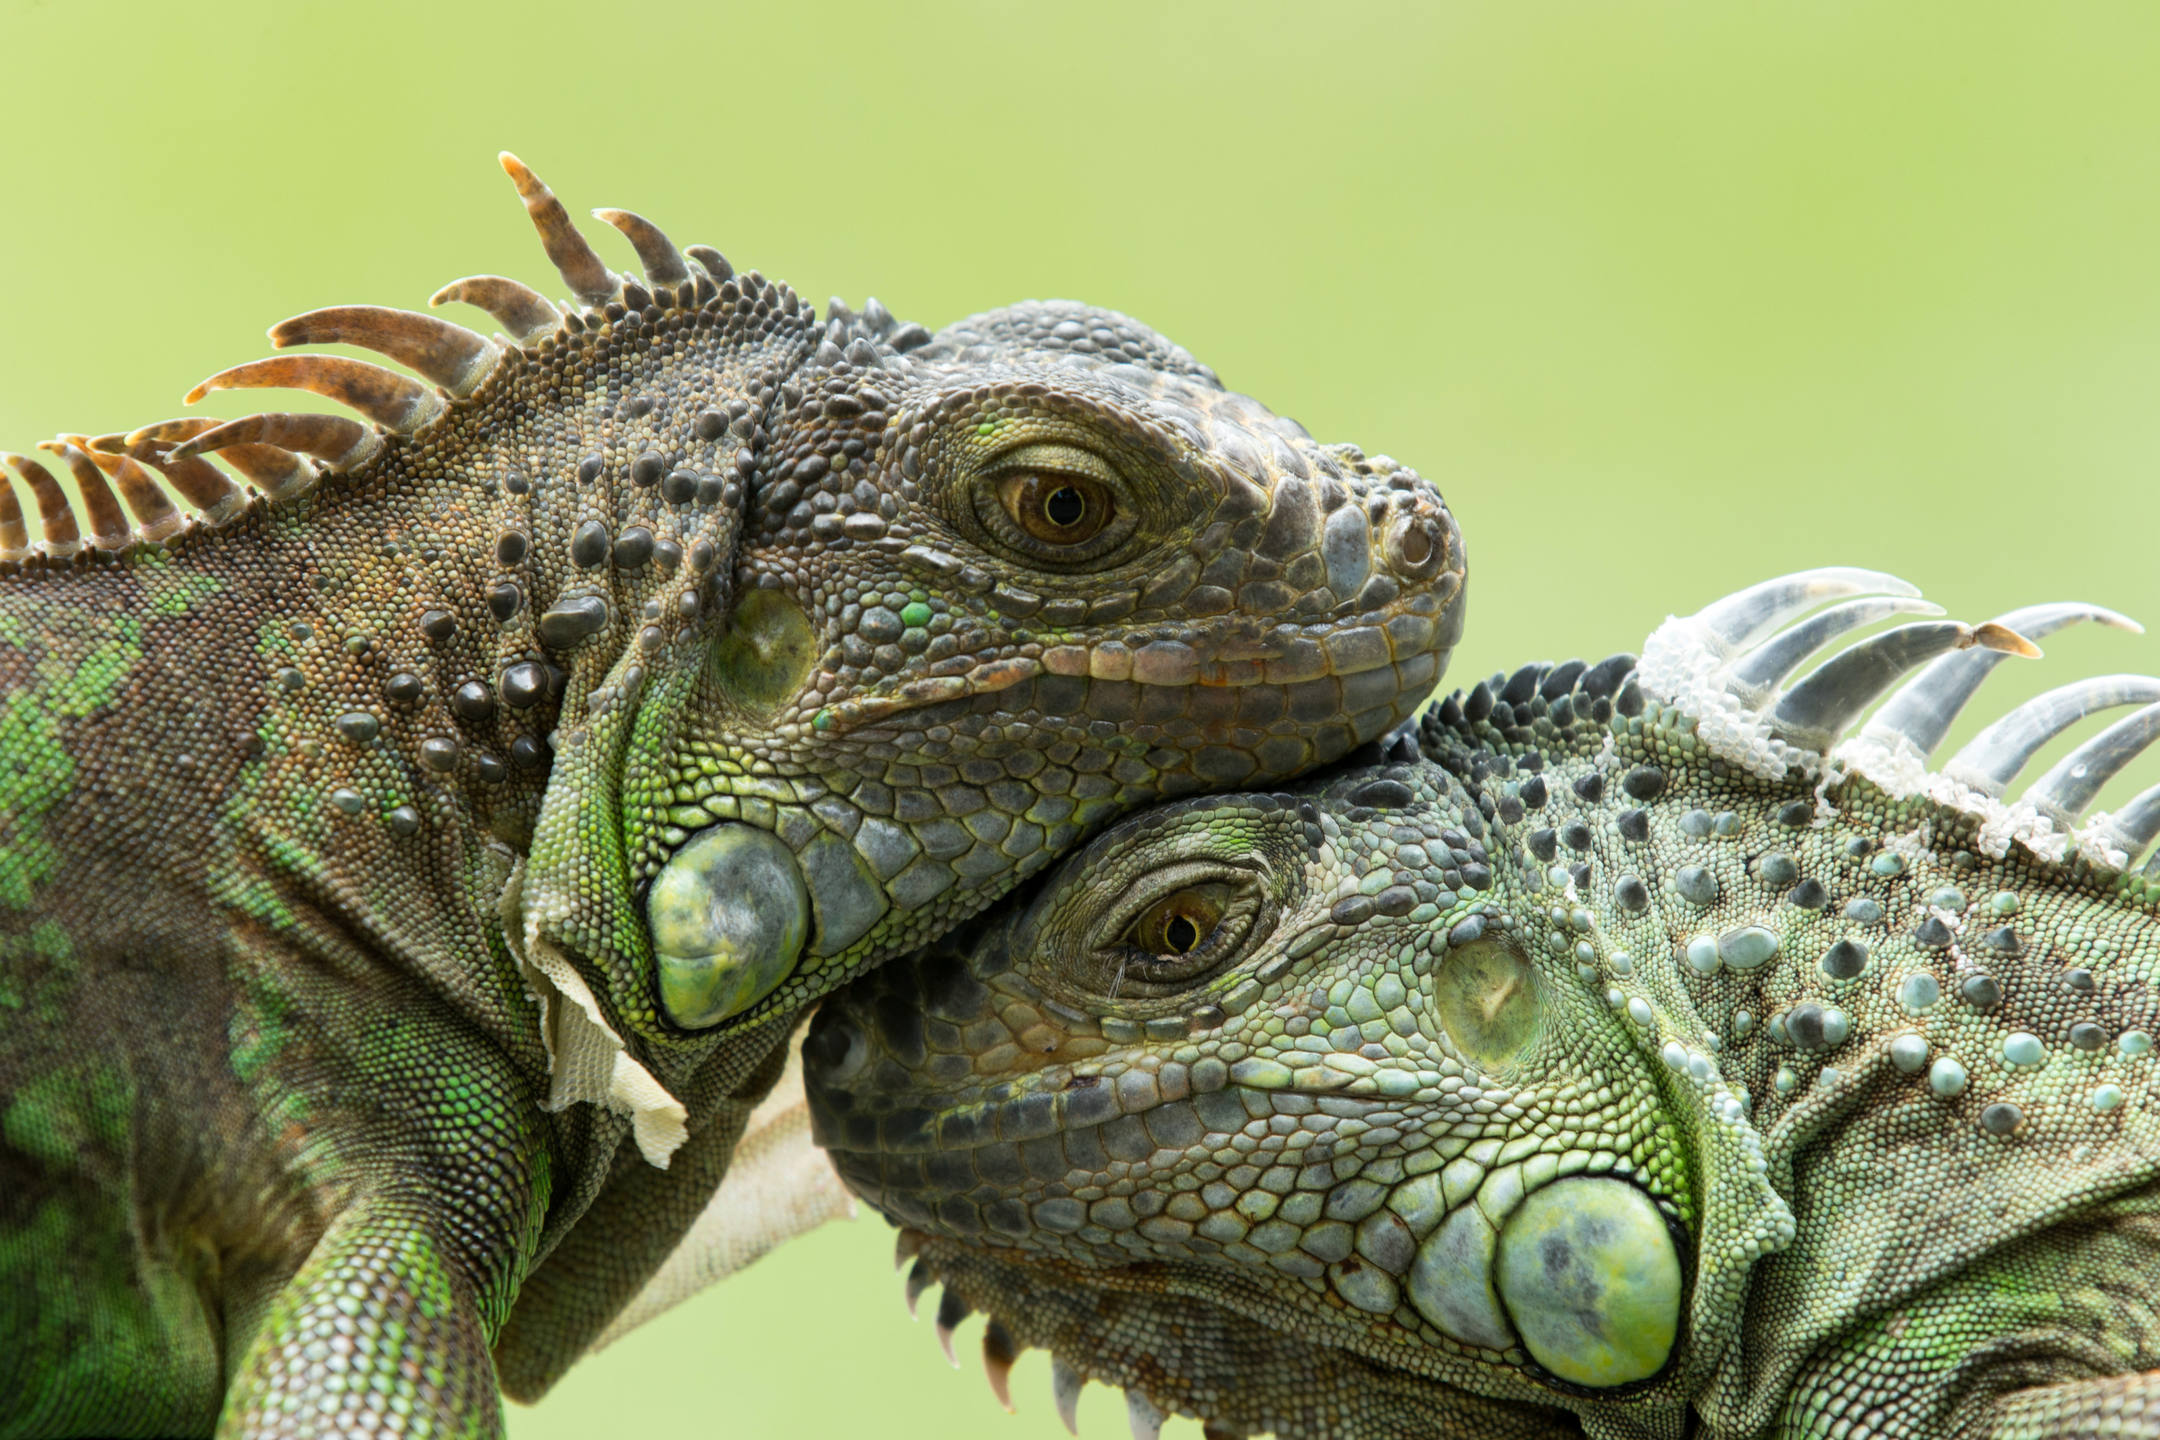 Iguanas cuddling